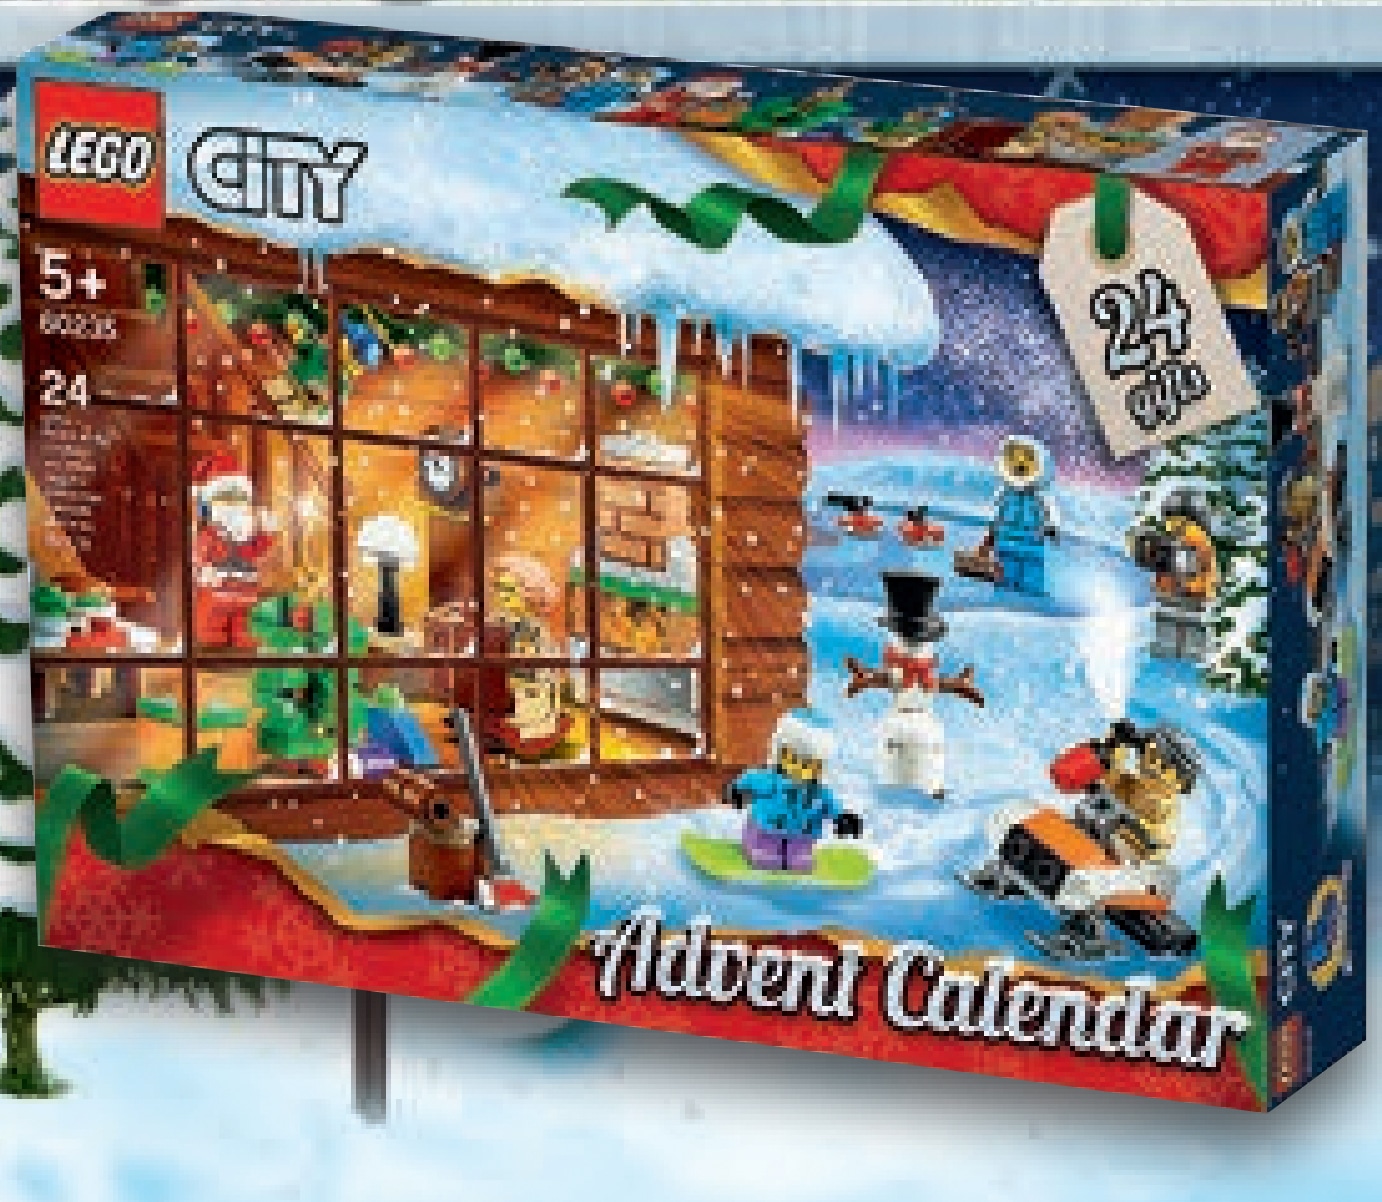 LEGO City 60235 Adventskalender 2019